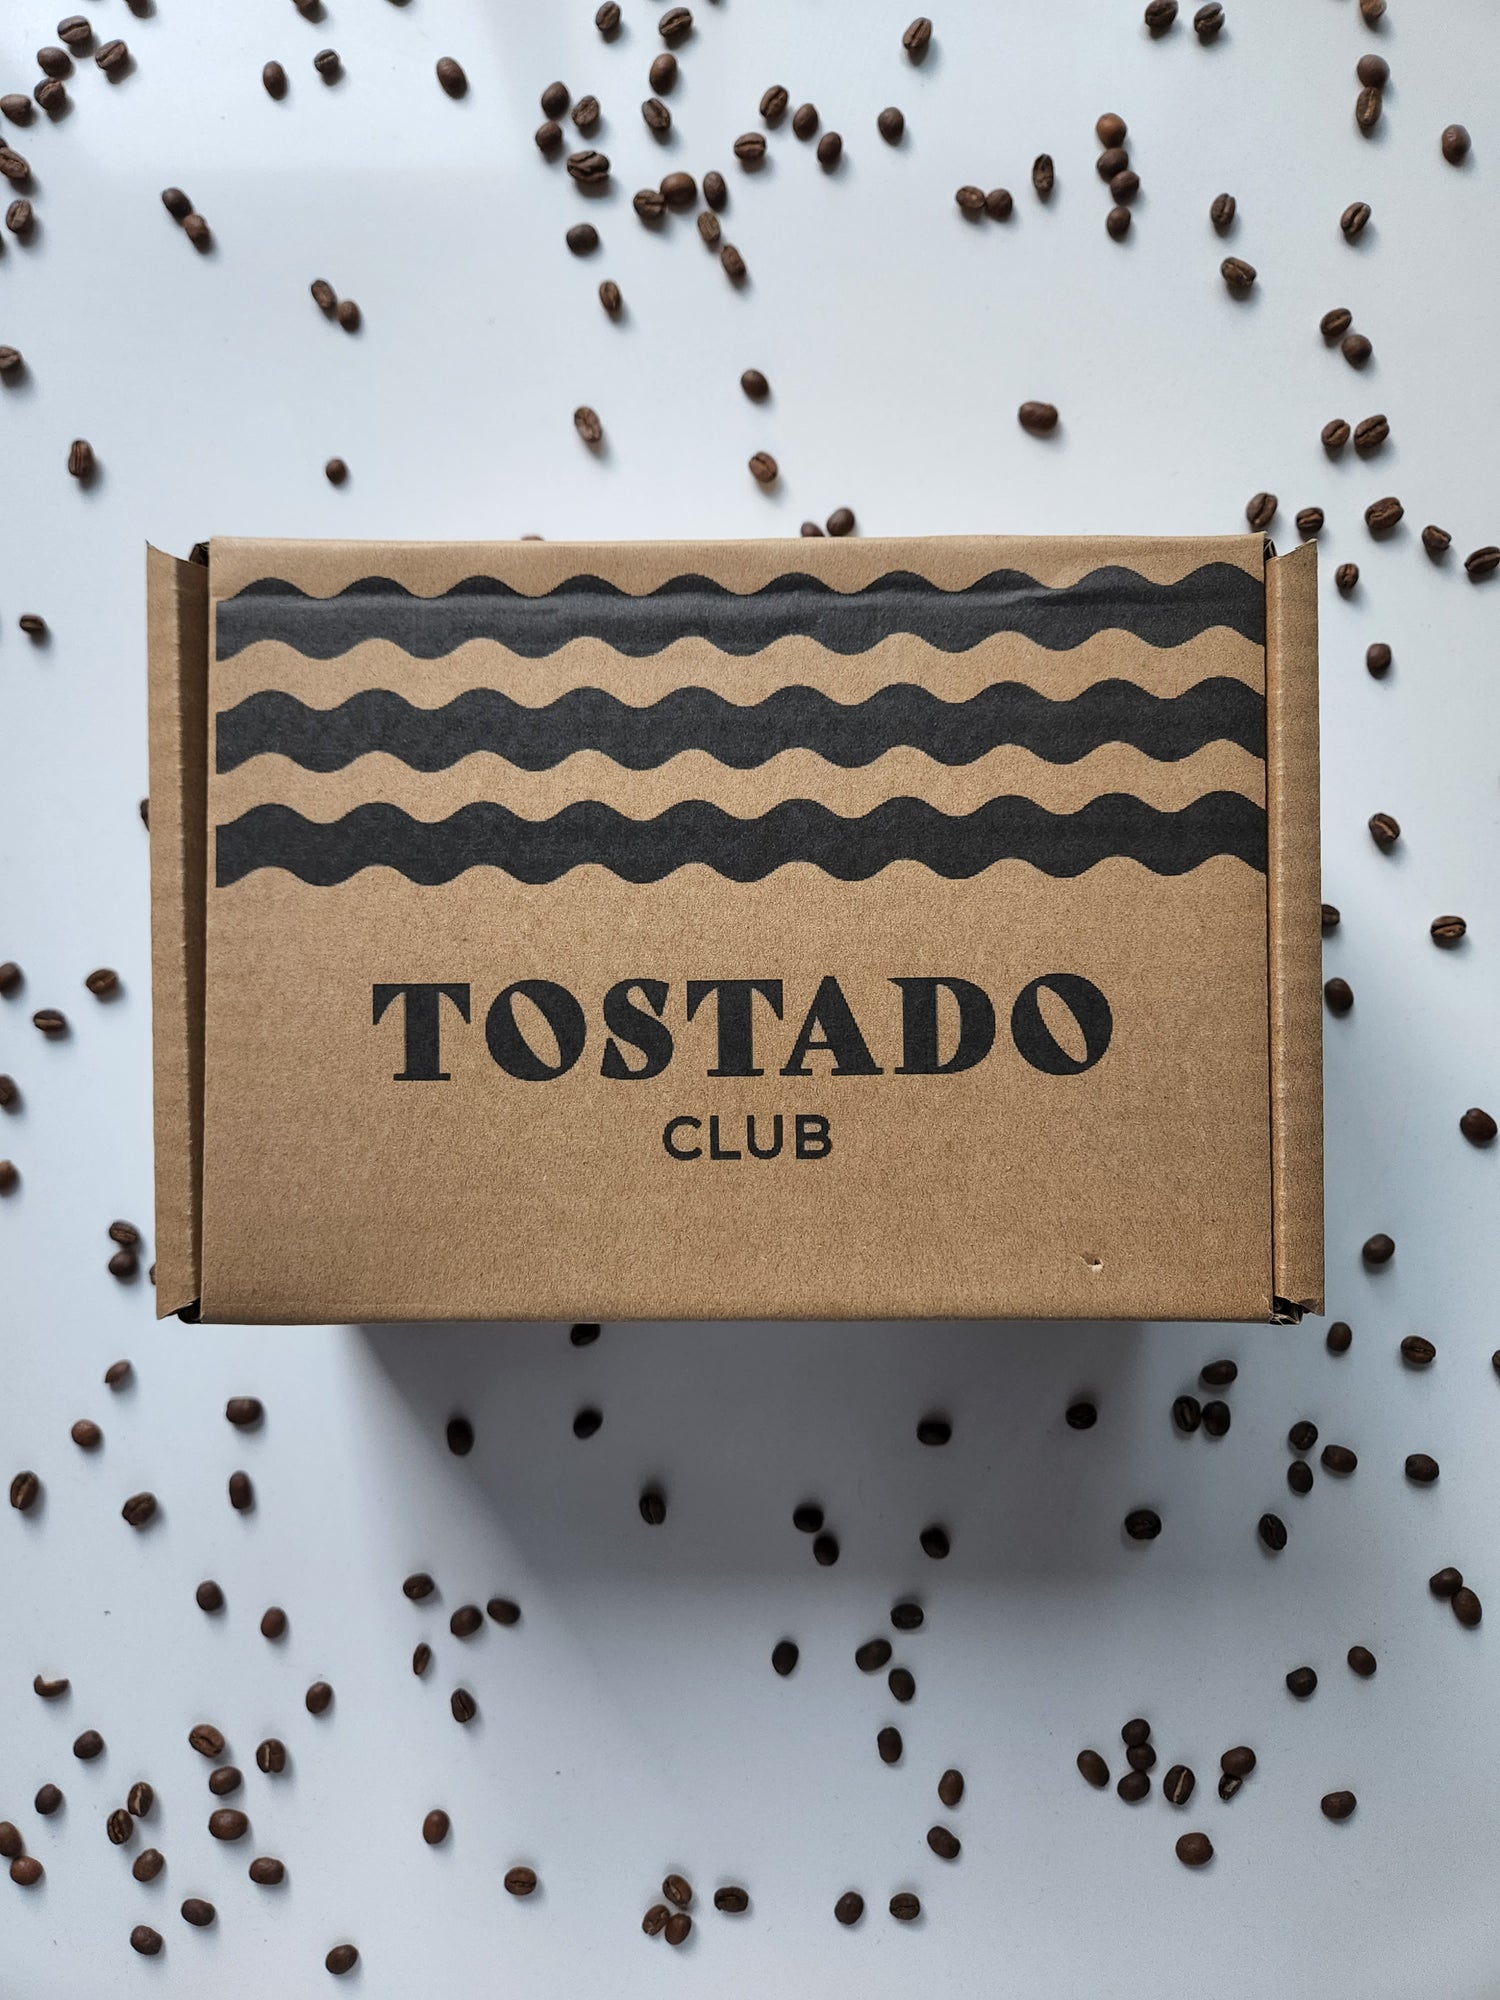 Caja de Tostado Club, suscripcion de cafe